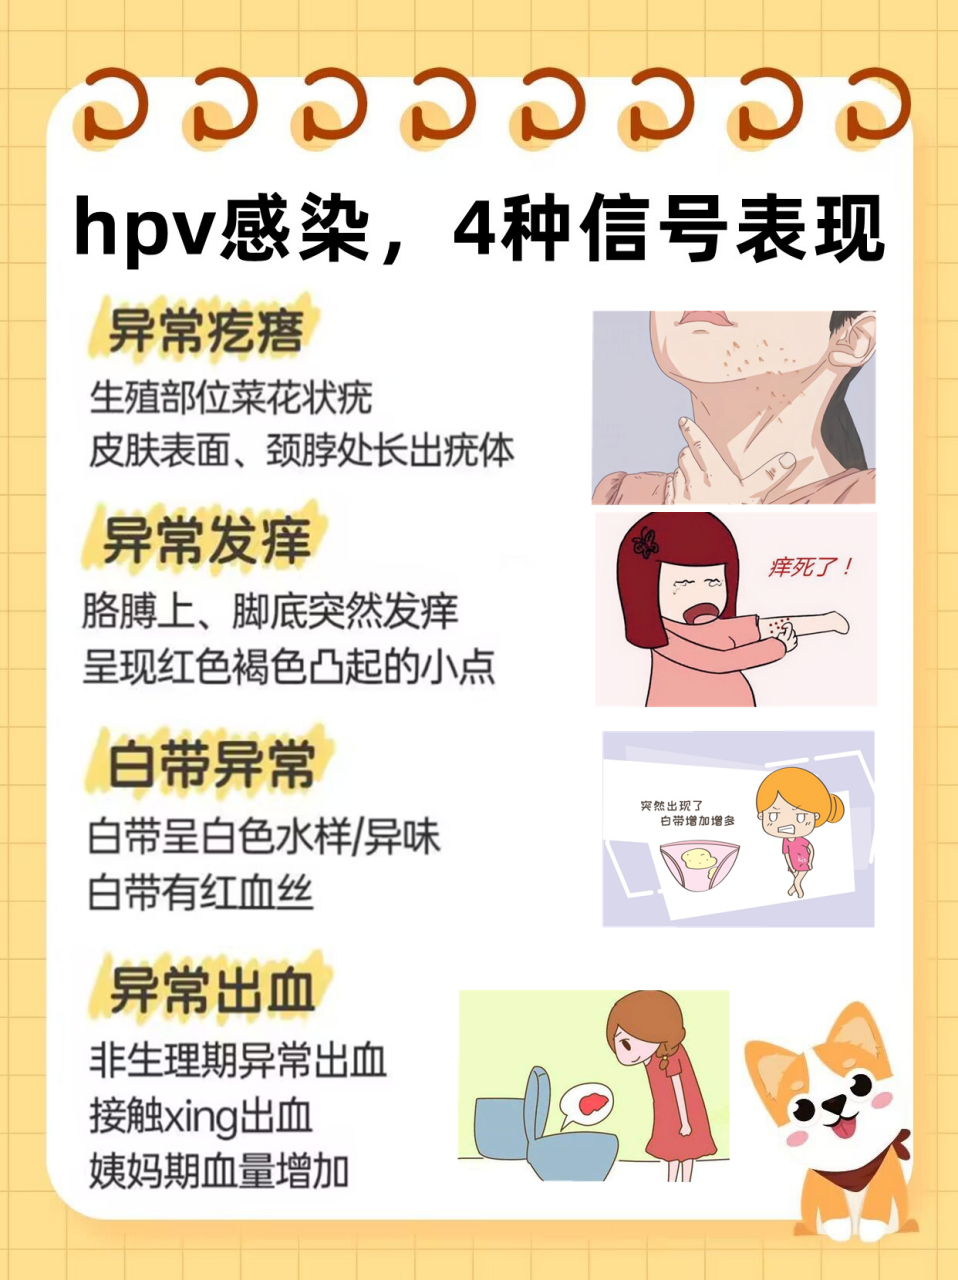 hpv感染症状和照片图片